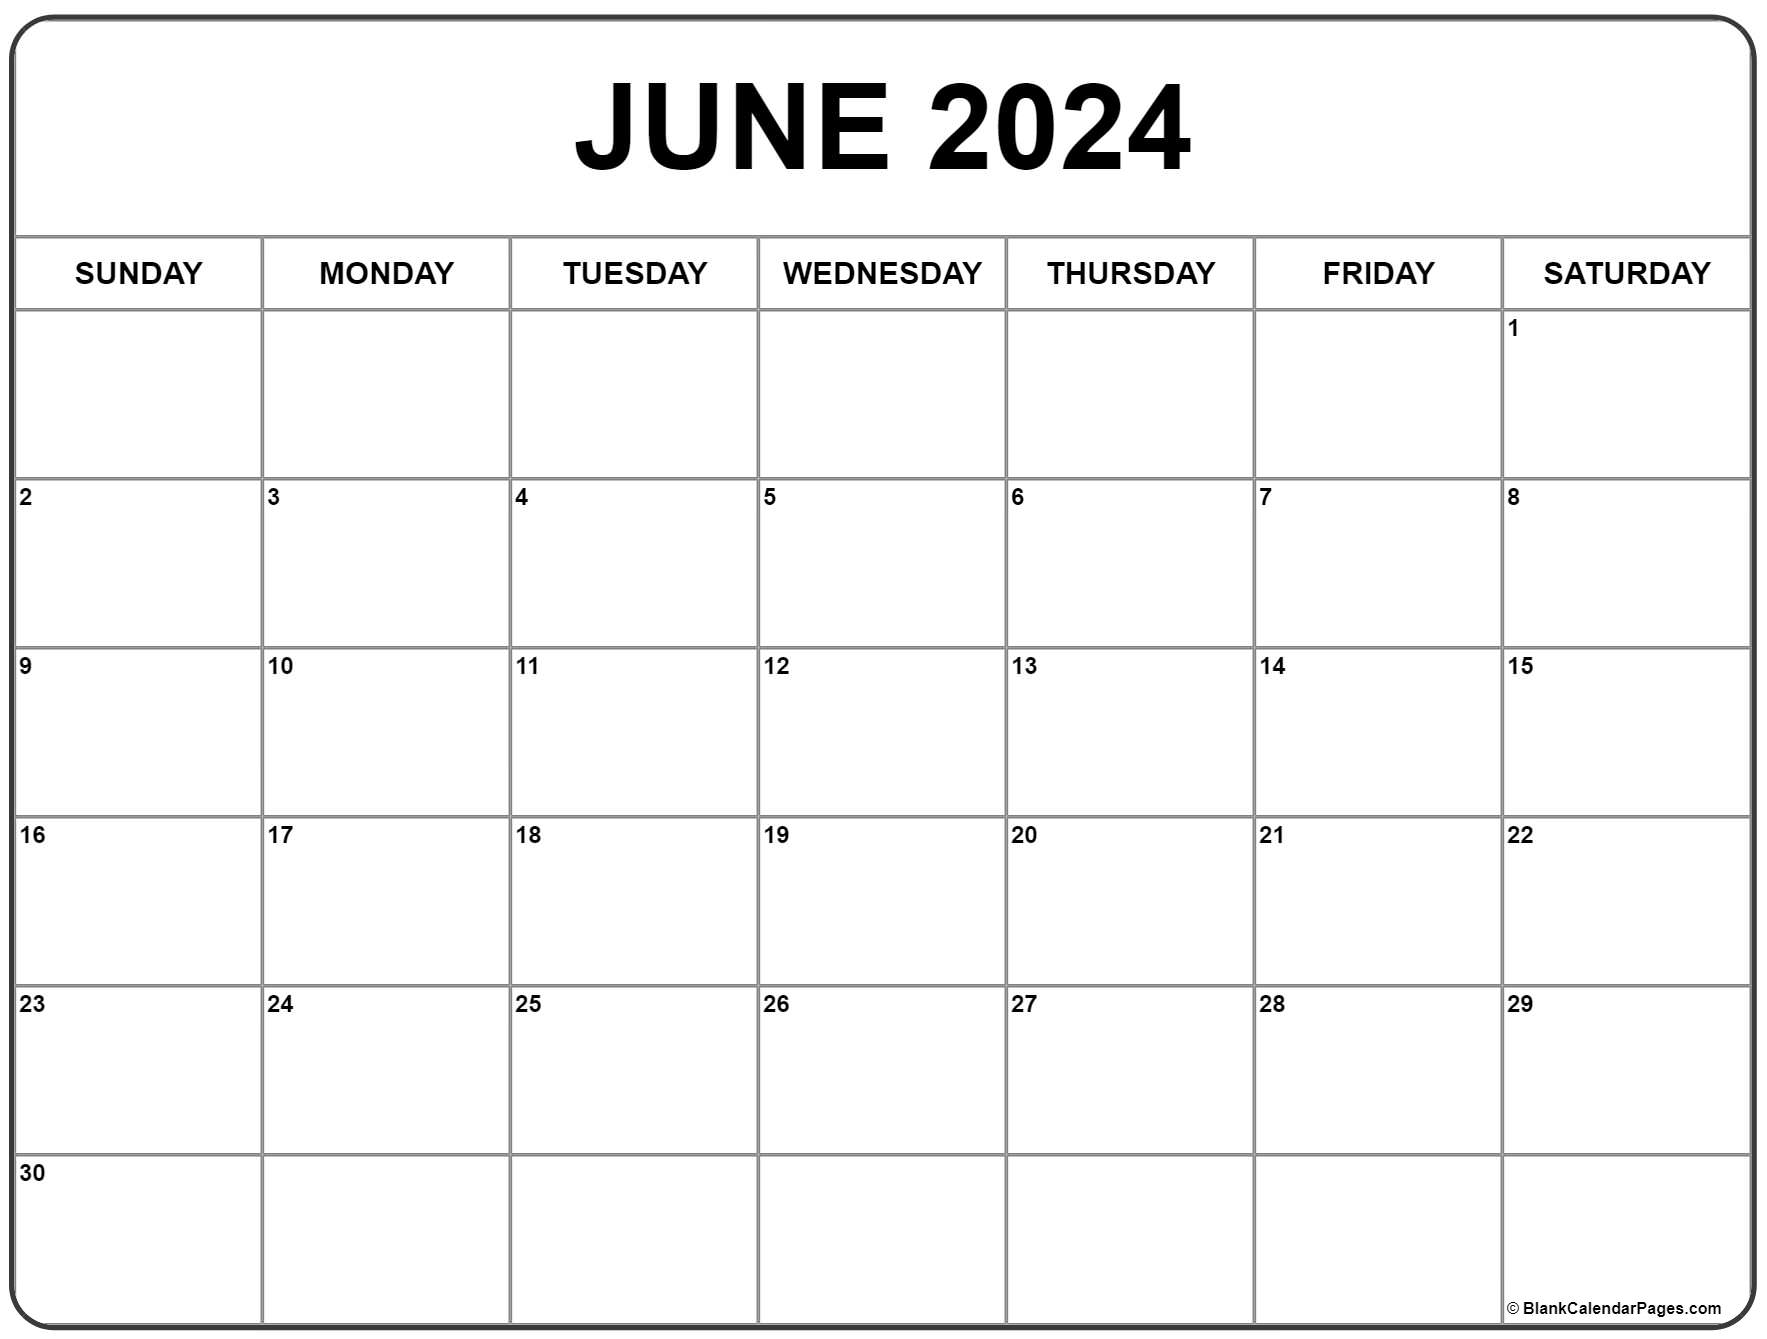 June 2024 Calendar | Free Printable Calendar for June Calendar 2024 Free Printable